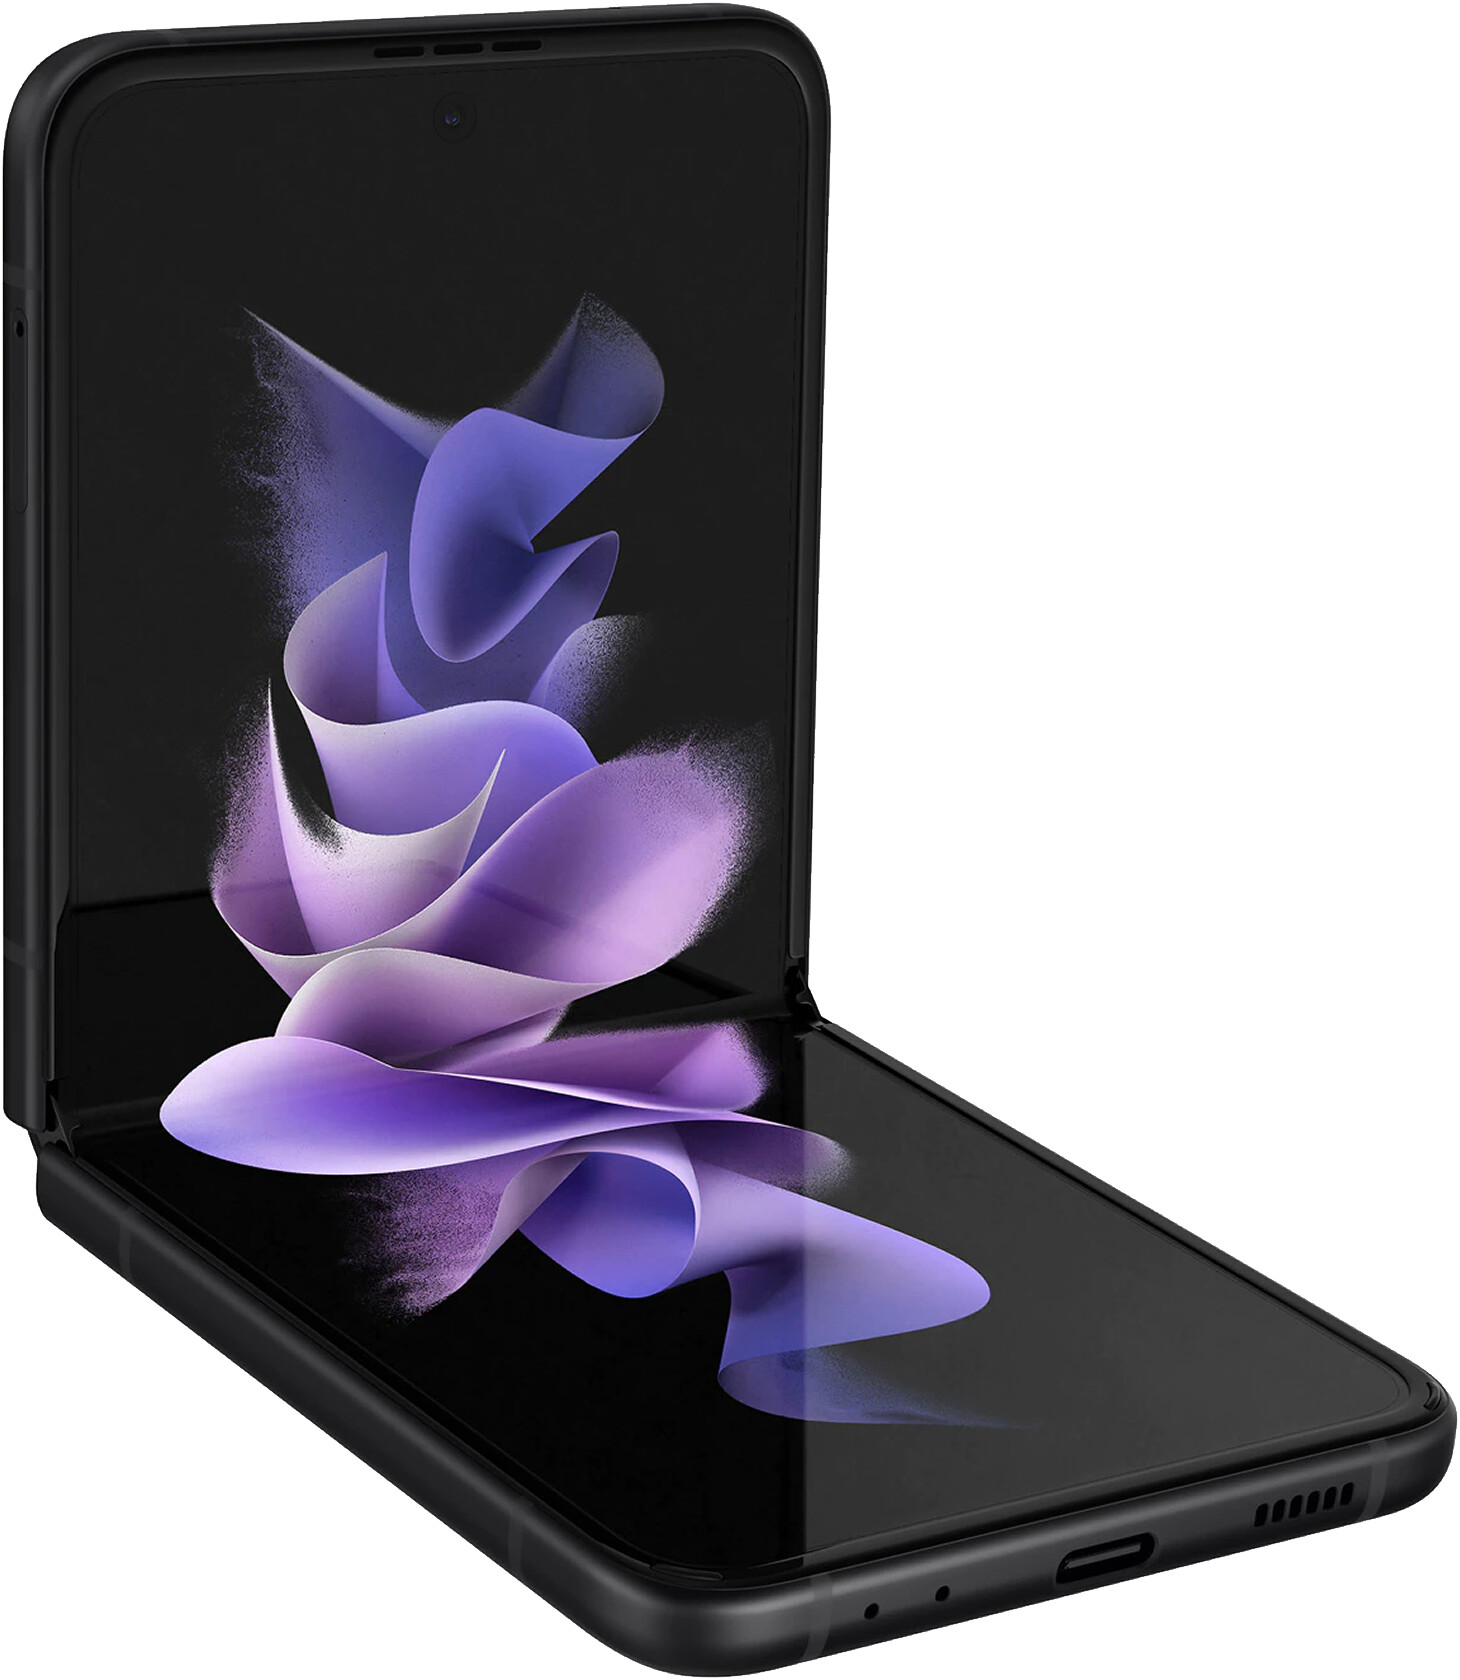 Samsung Galaxy Z Flip4 256GB